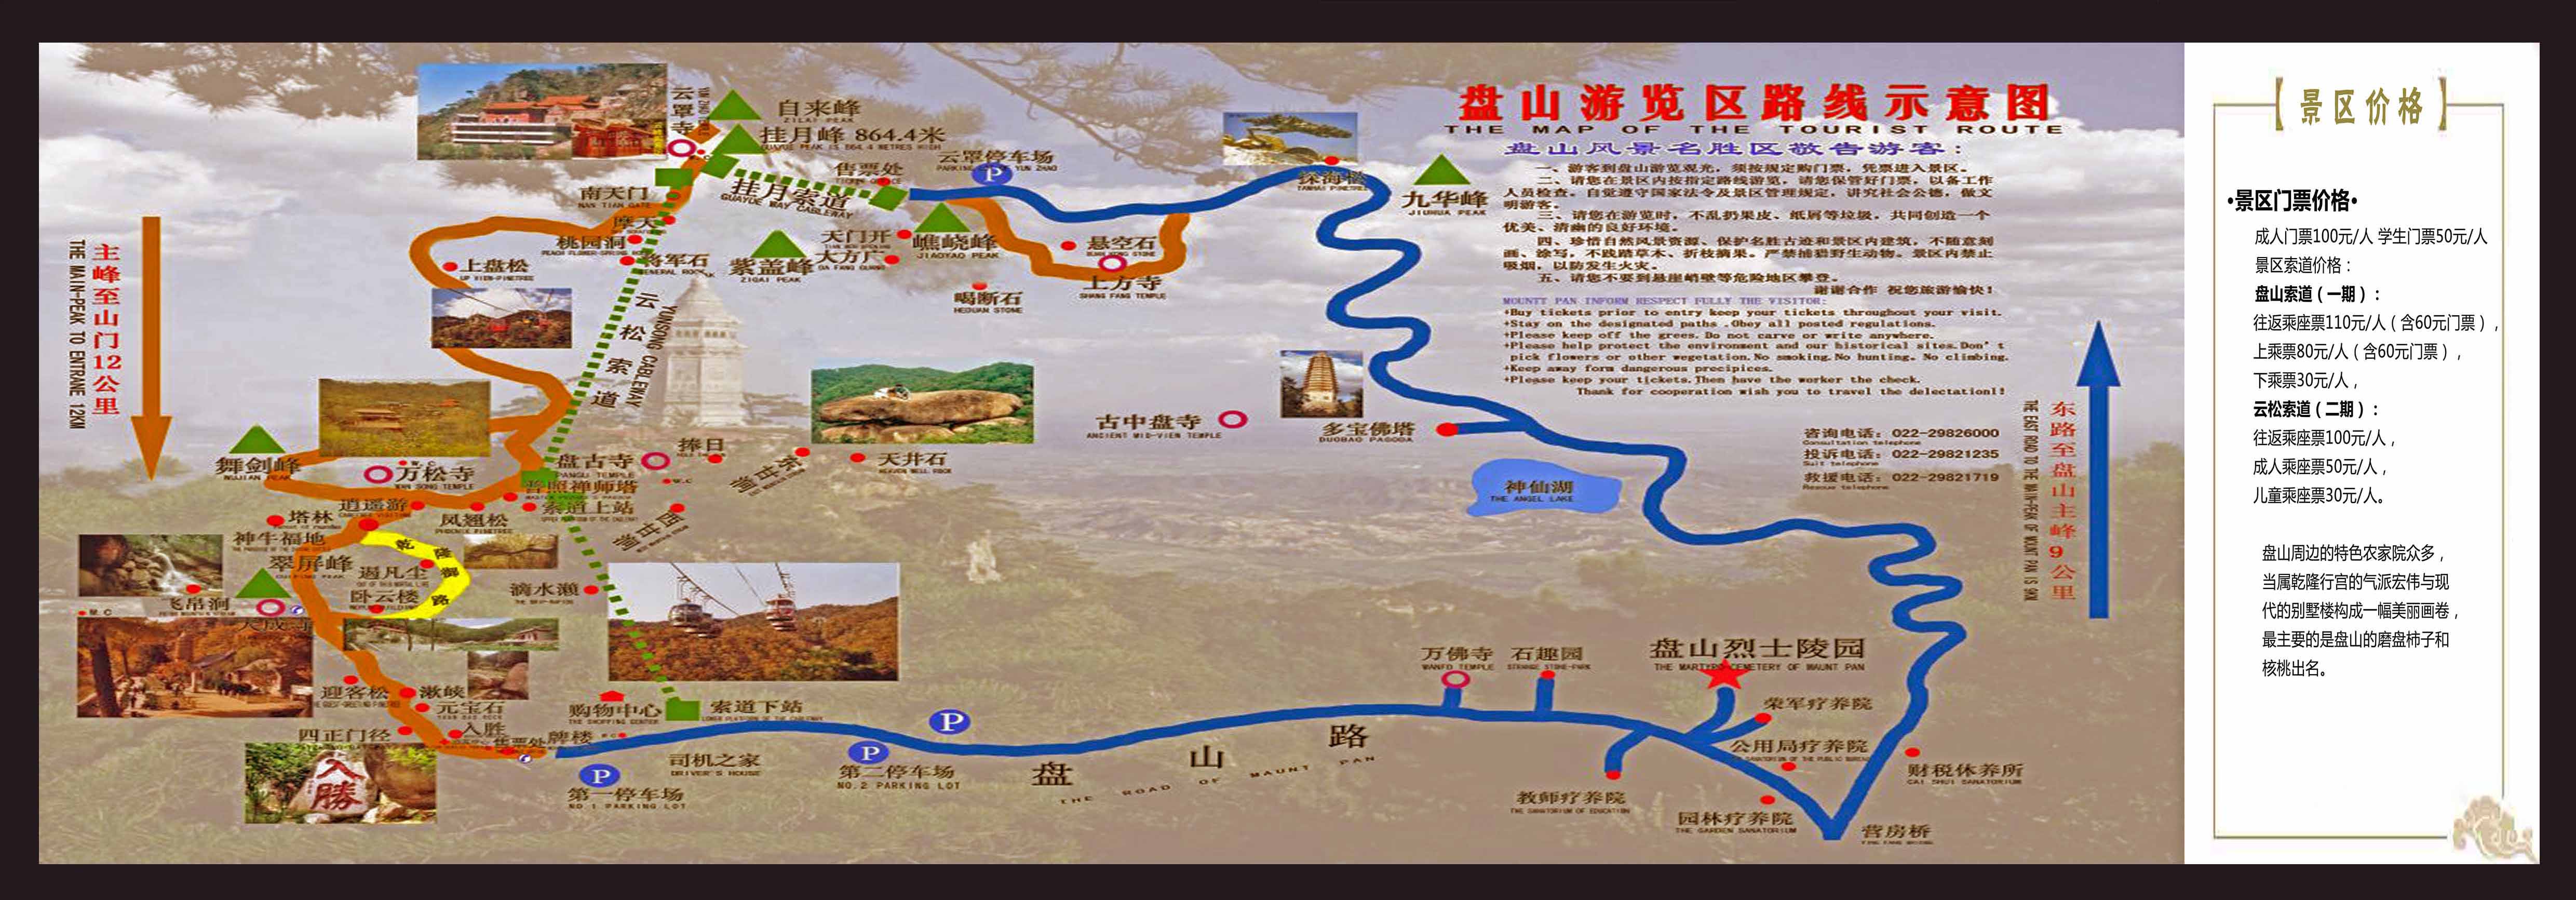 盘山旅游地图图片